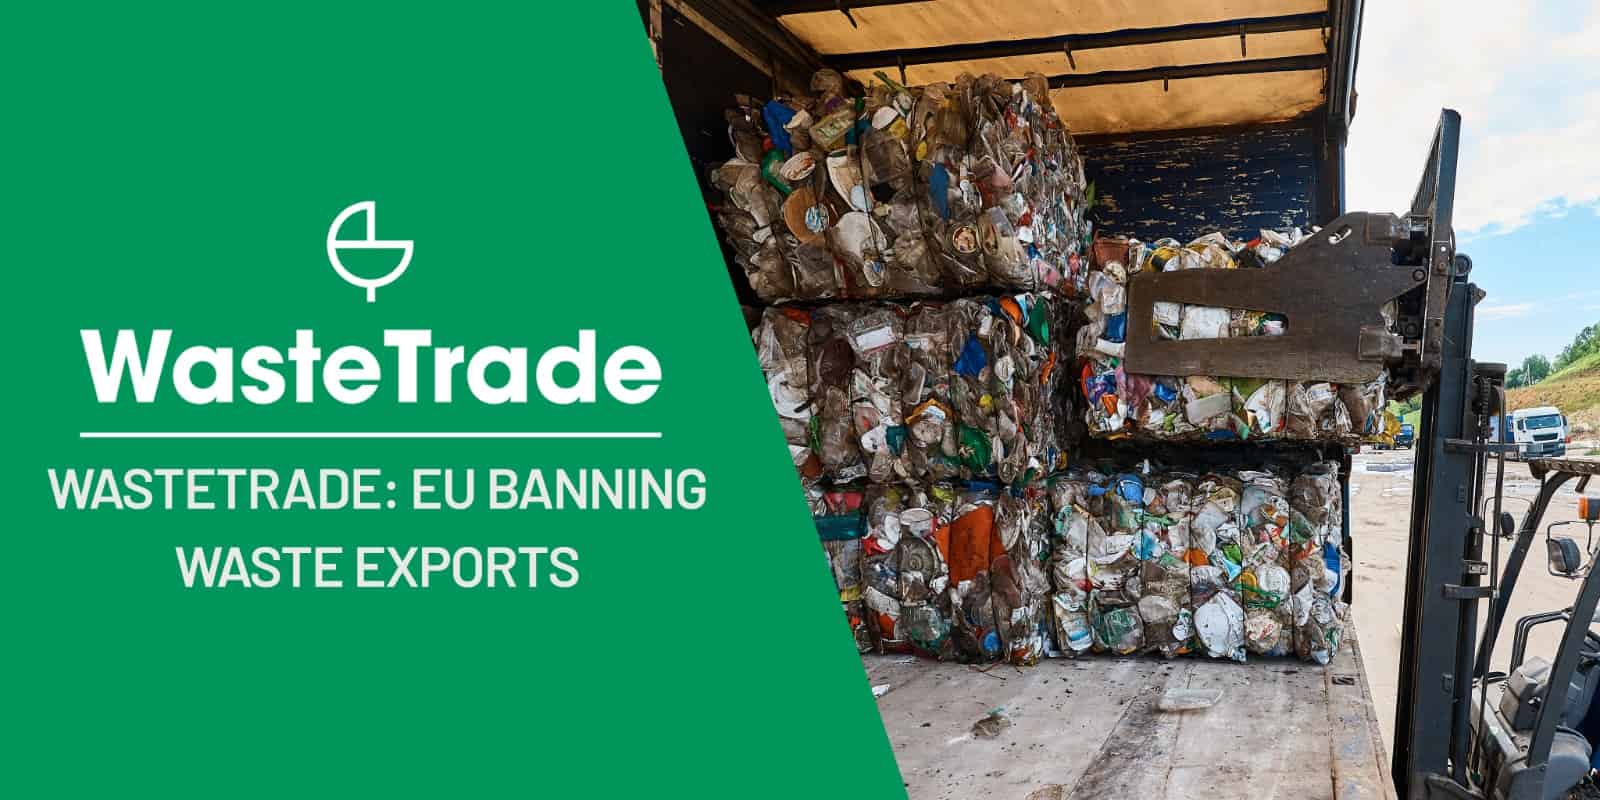 EU:s förbud mot export av avfall